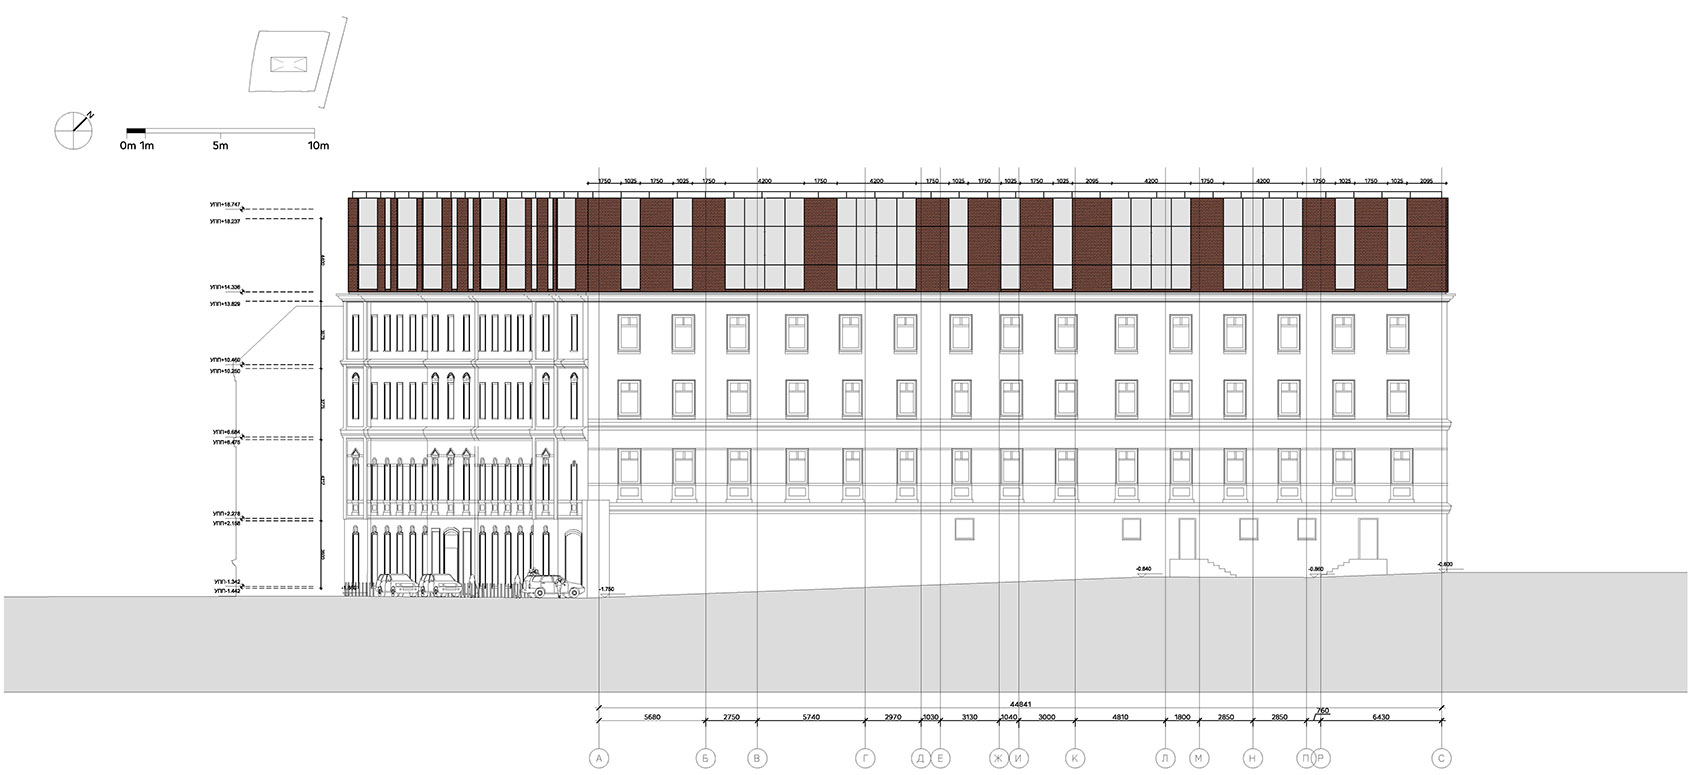 Sovremennik公寓楼，莫斯科/新古典主义公寓楼的修复和现代扩建-81